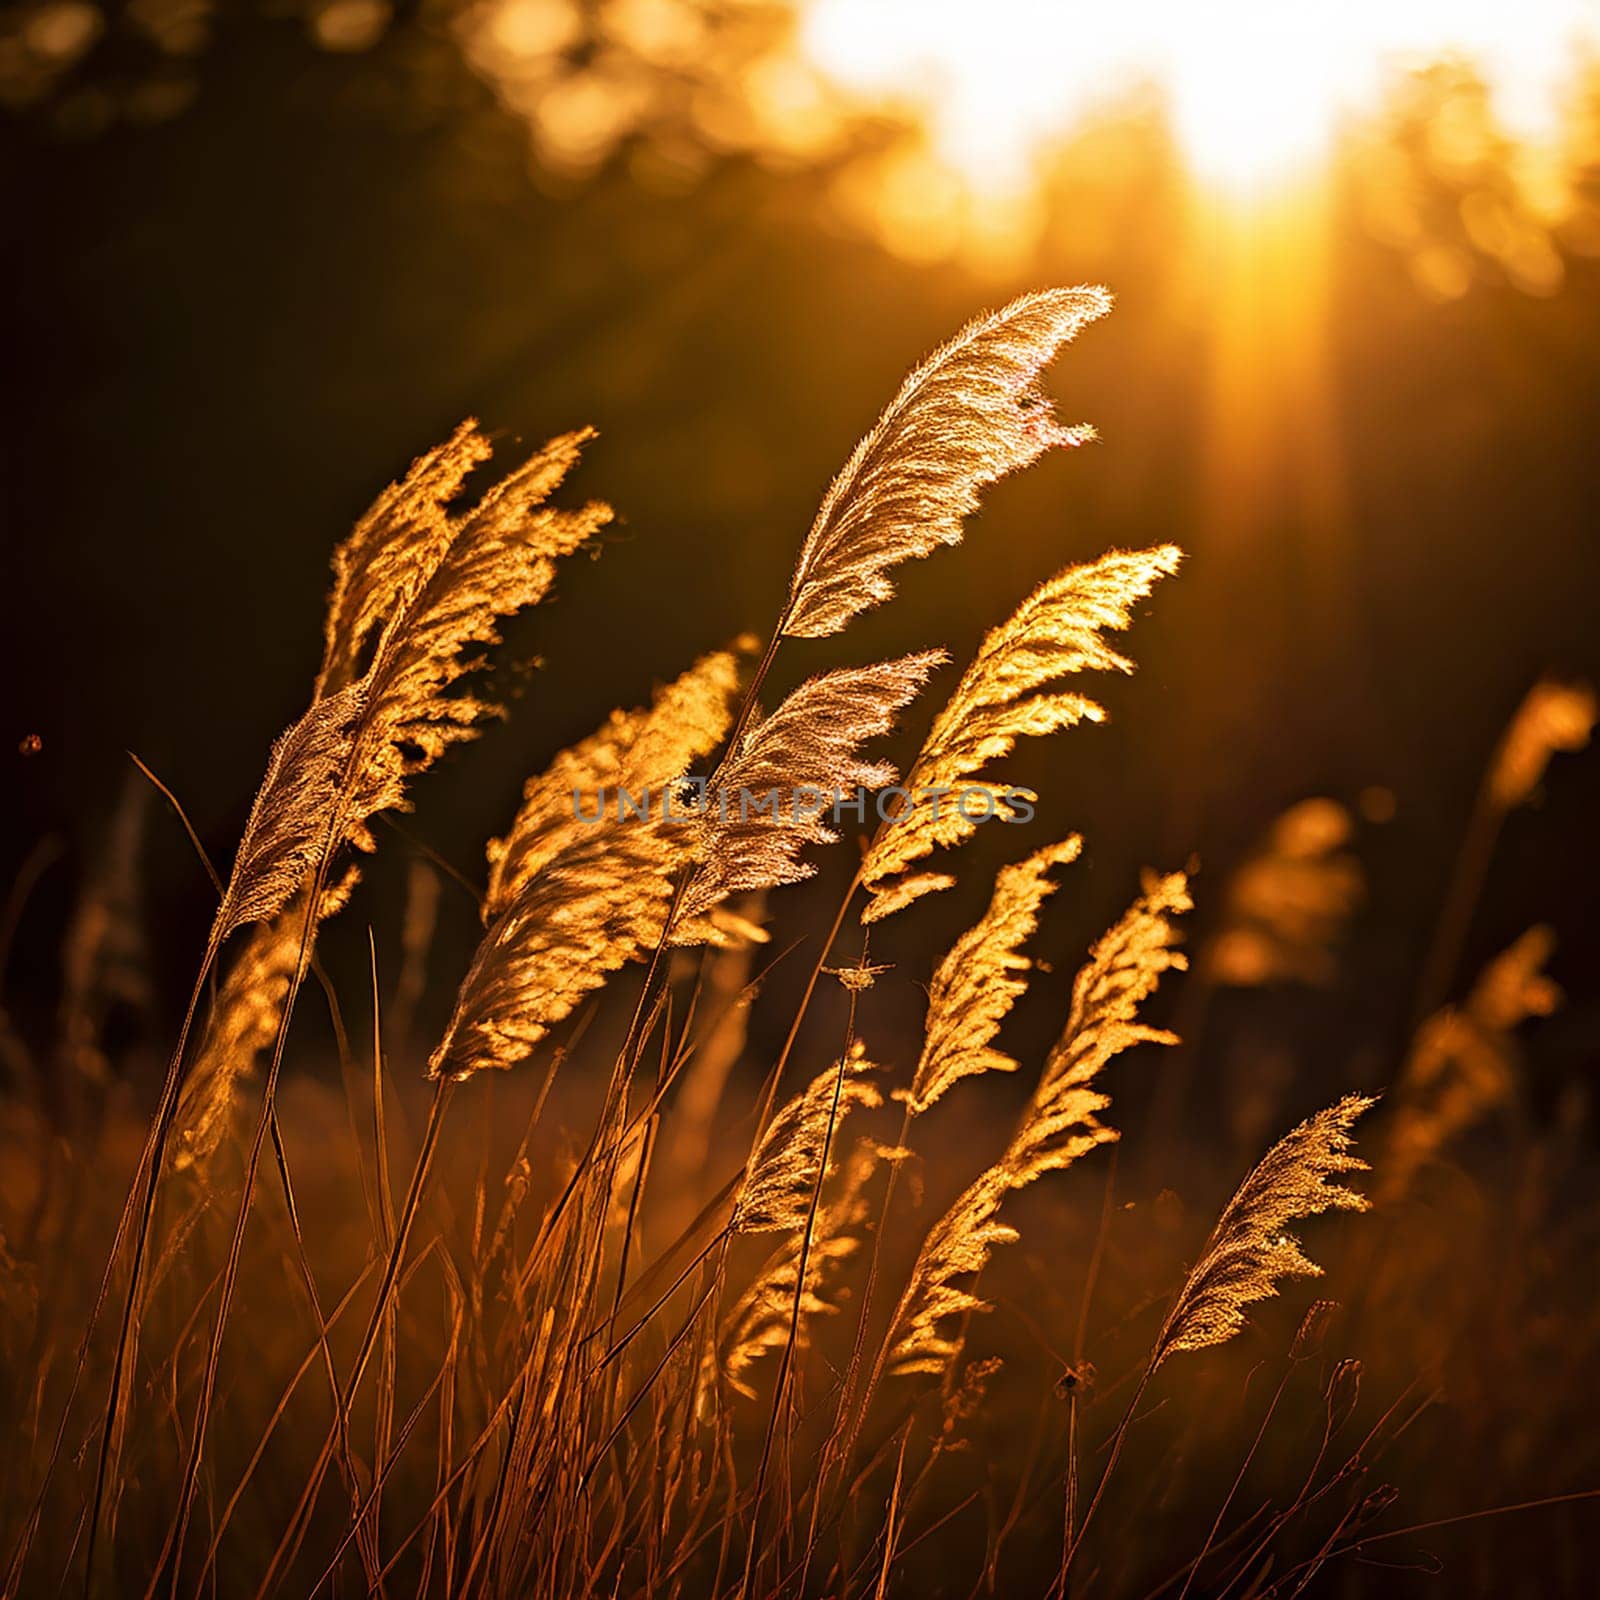 Golden Bliss: Warm Sunlight Illuminating the Blowing Wildgrass